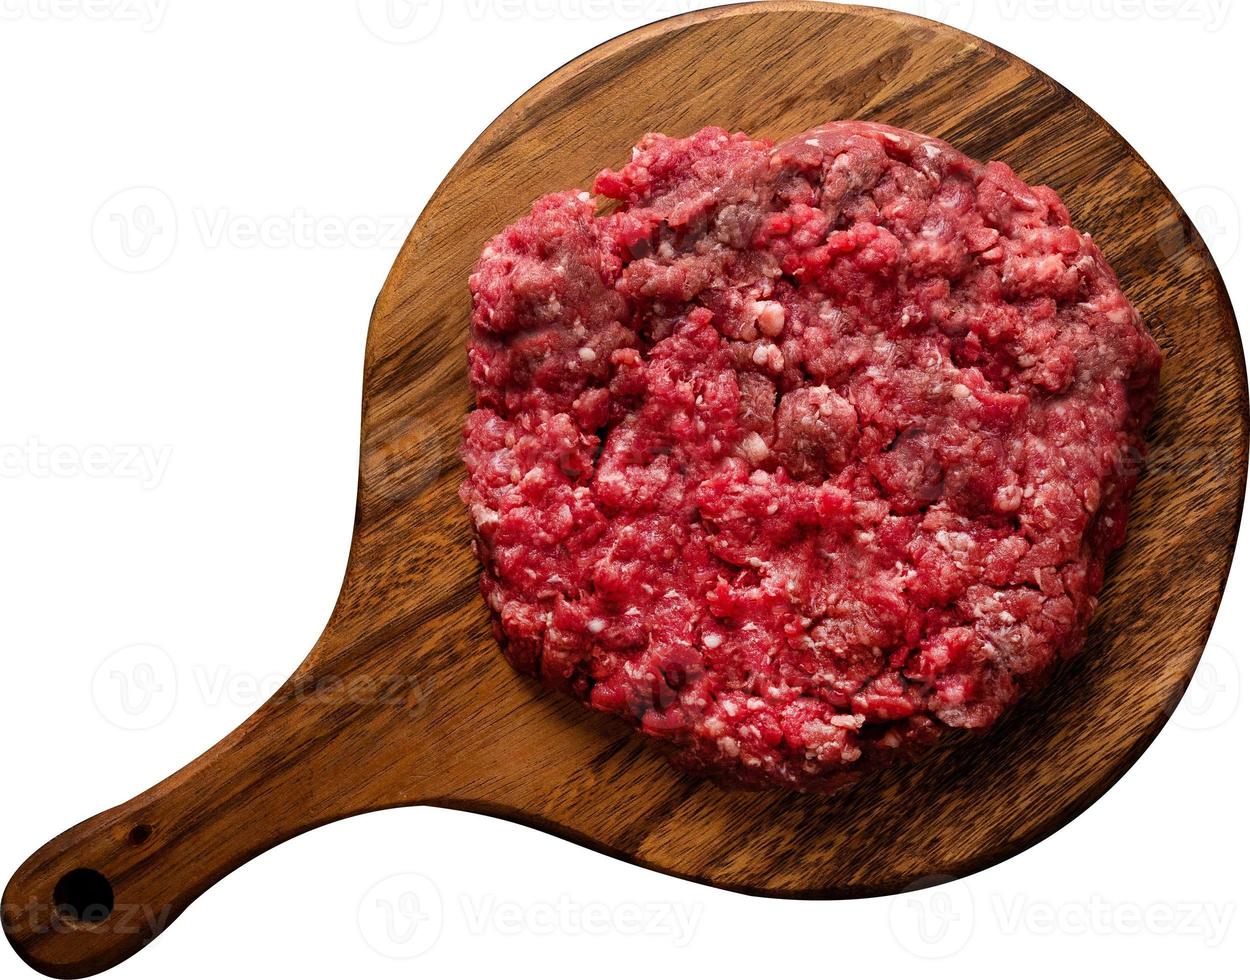 carne moída de carne crua, picada, mesa de madeira isolada na mesa branca foto